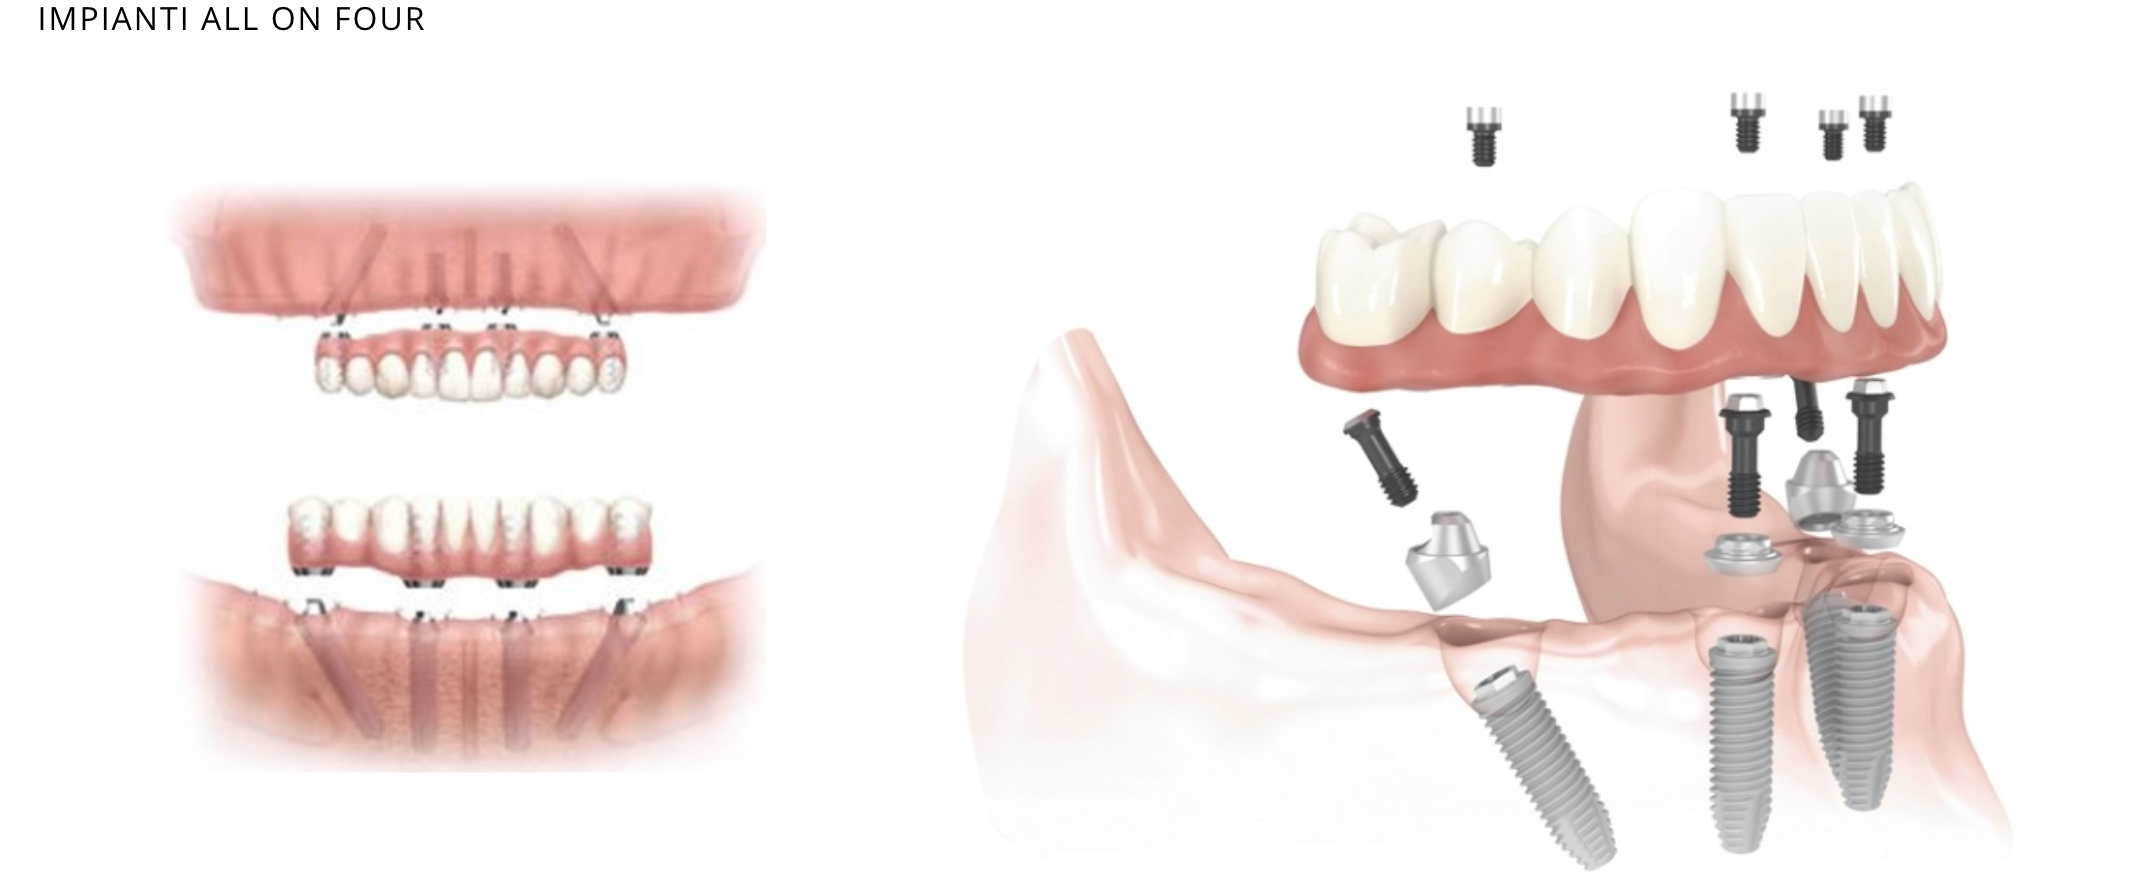 Имплантация зубов all on 4. Имплантация зубов по технологии «all on 4». All on 4 имплантация Нобель.